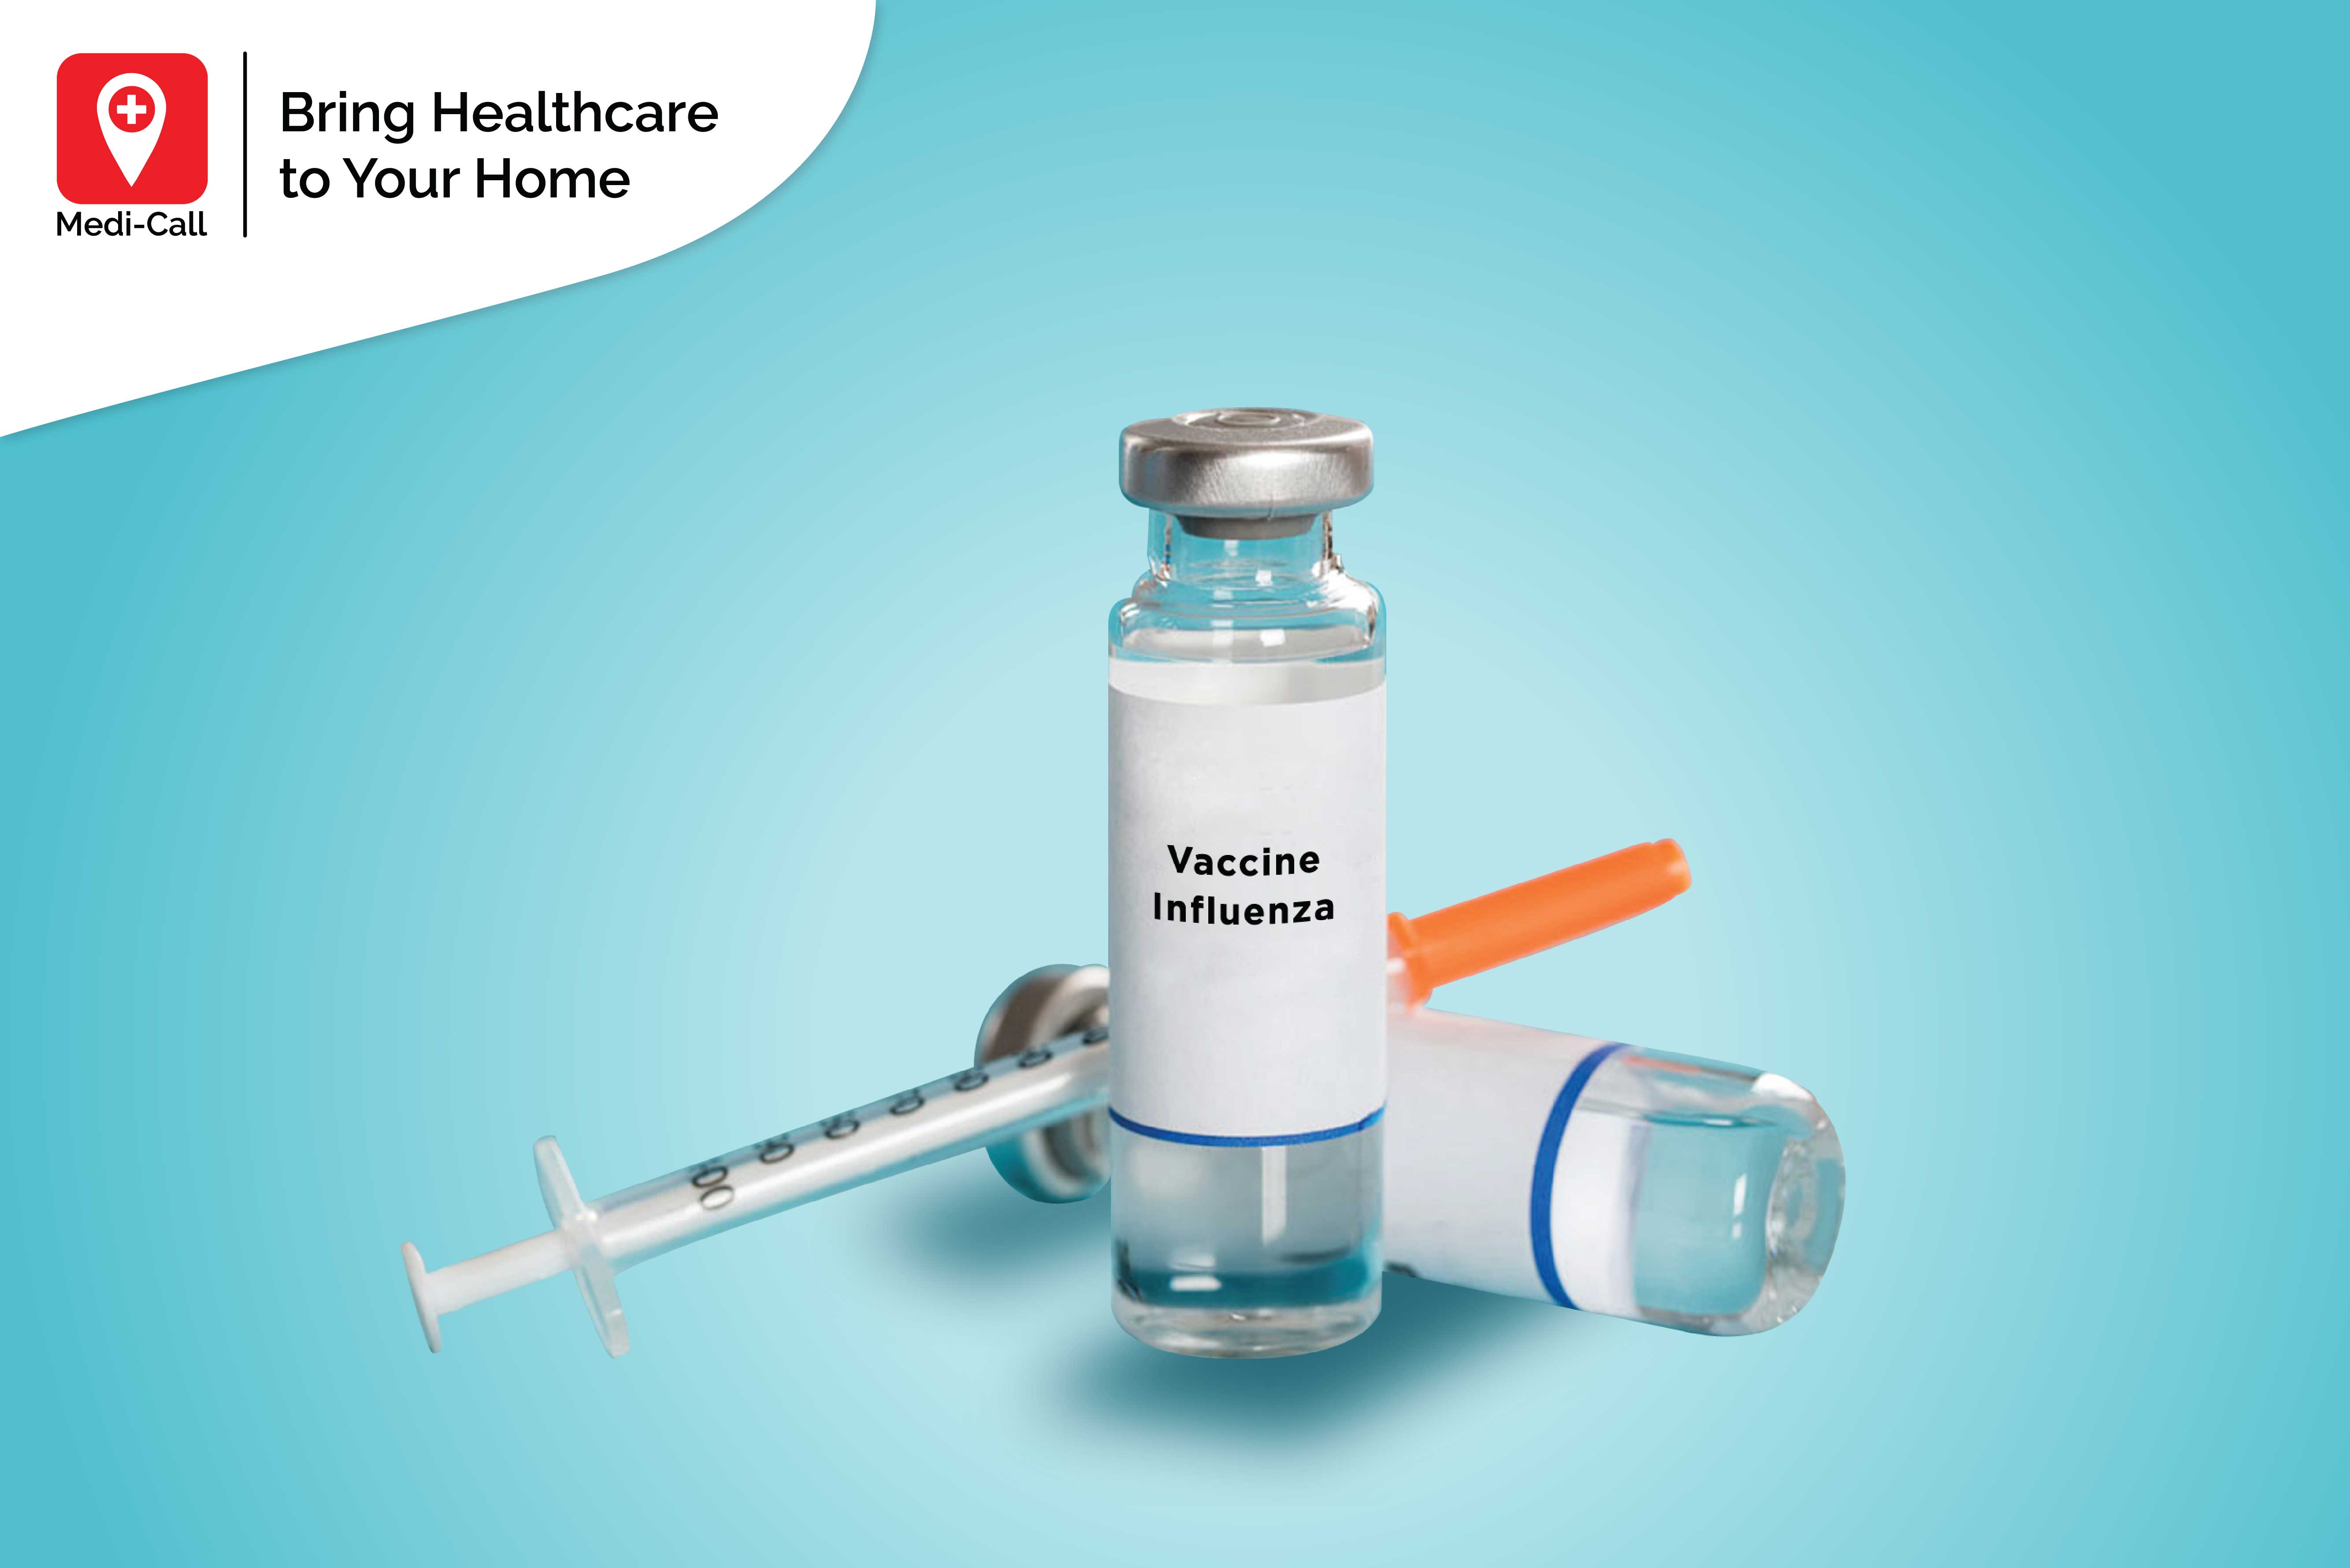 macam-macam vaksin untuk lansia, vaksin influenza, vaksin pneunomia, vaksin untuk lansia, vaksin di rumah Anda, medicall, medi-call